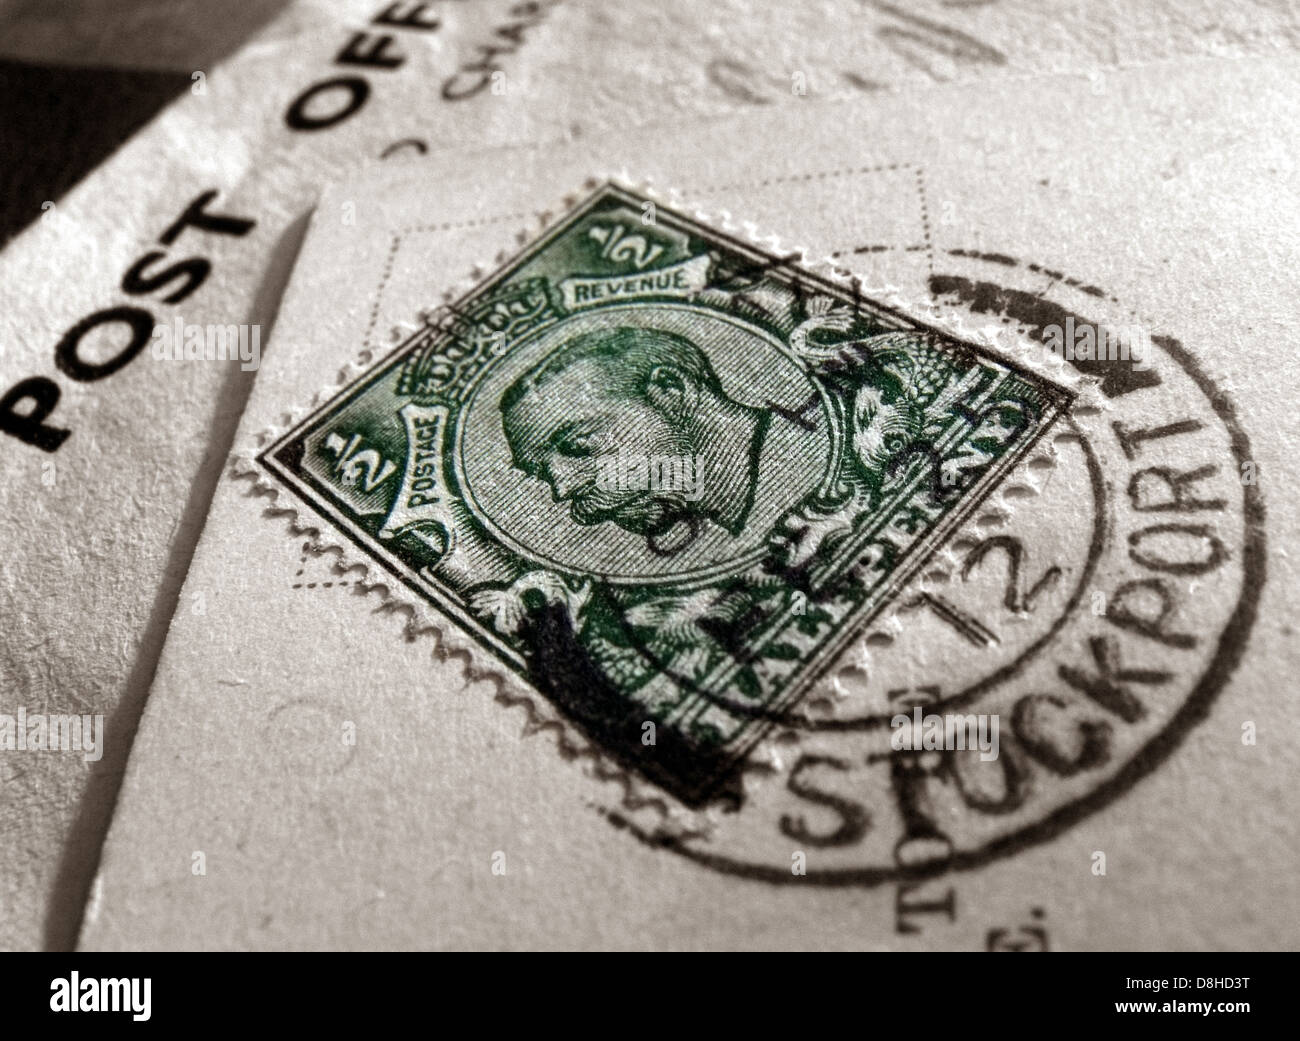 Metà verde Penny francobollo britannico con timbro postale Stockport Cheshire England Regno Unito Foto Stock